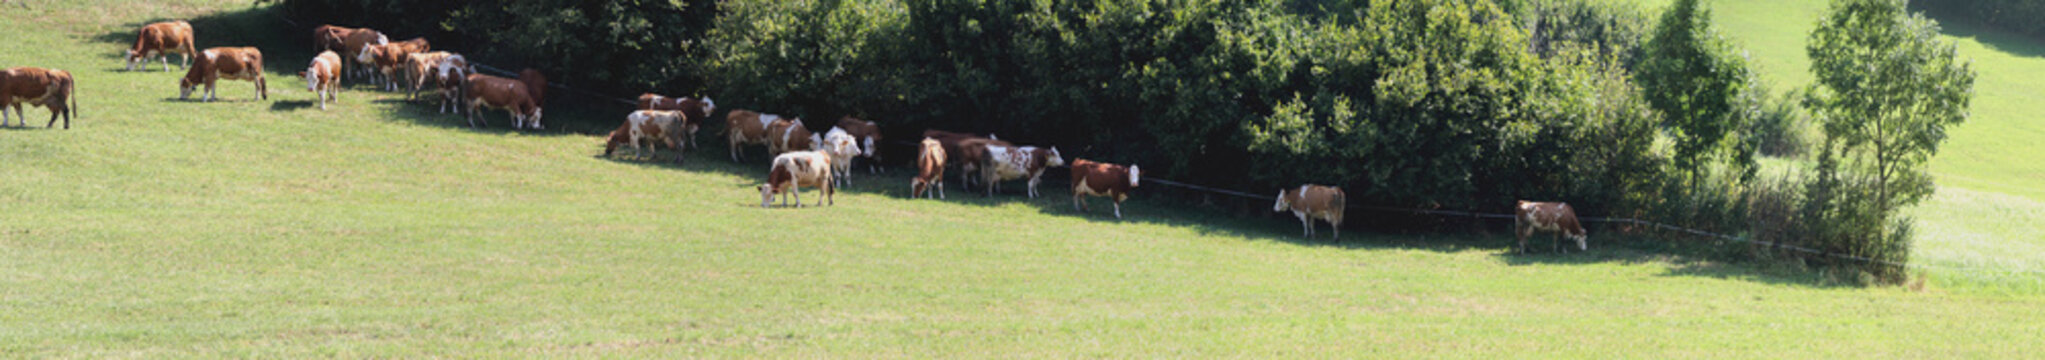 Schattensucher - Kühe in der Mittagshitze